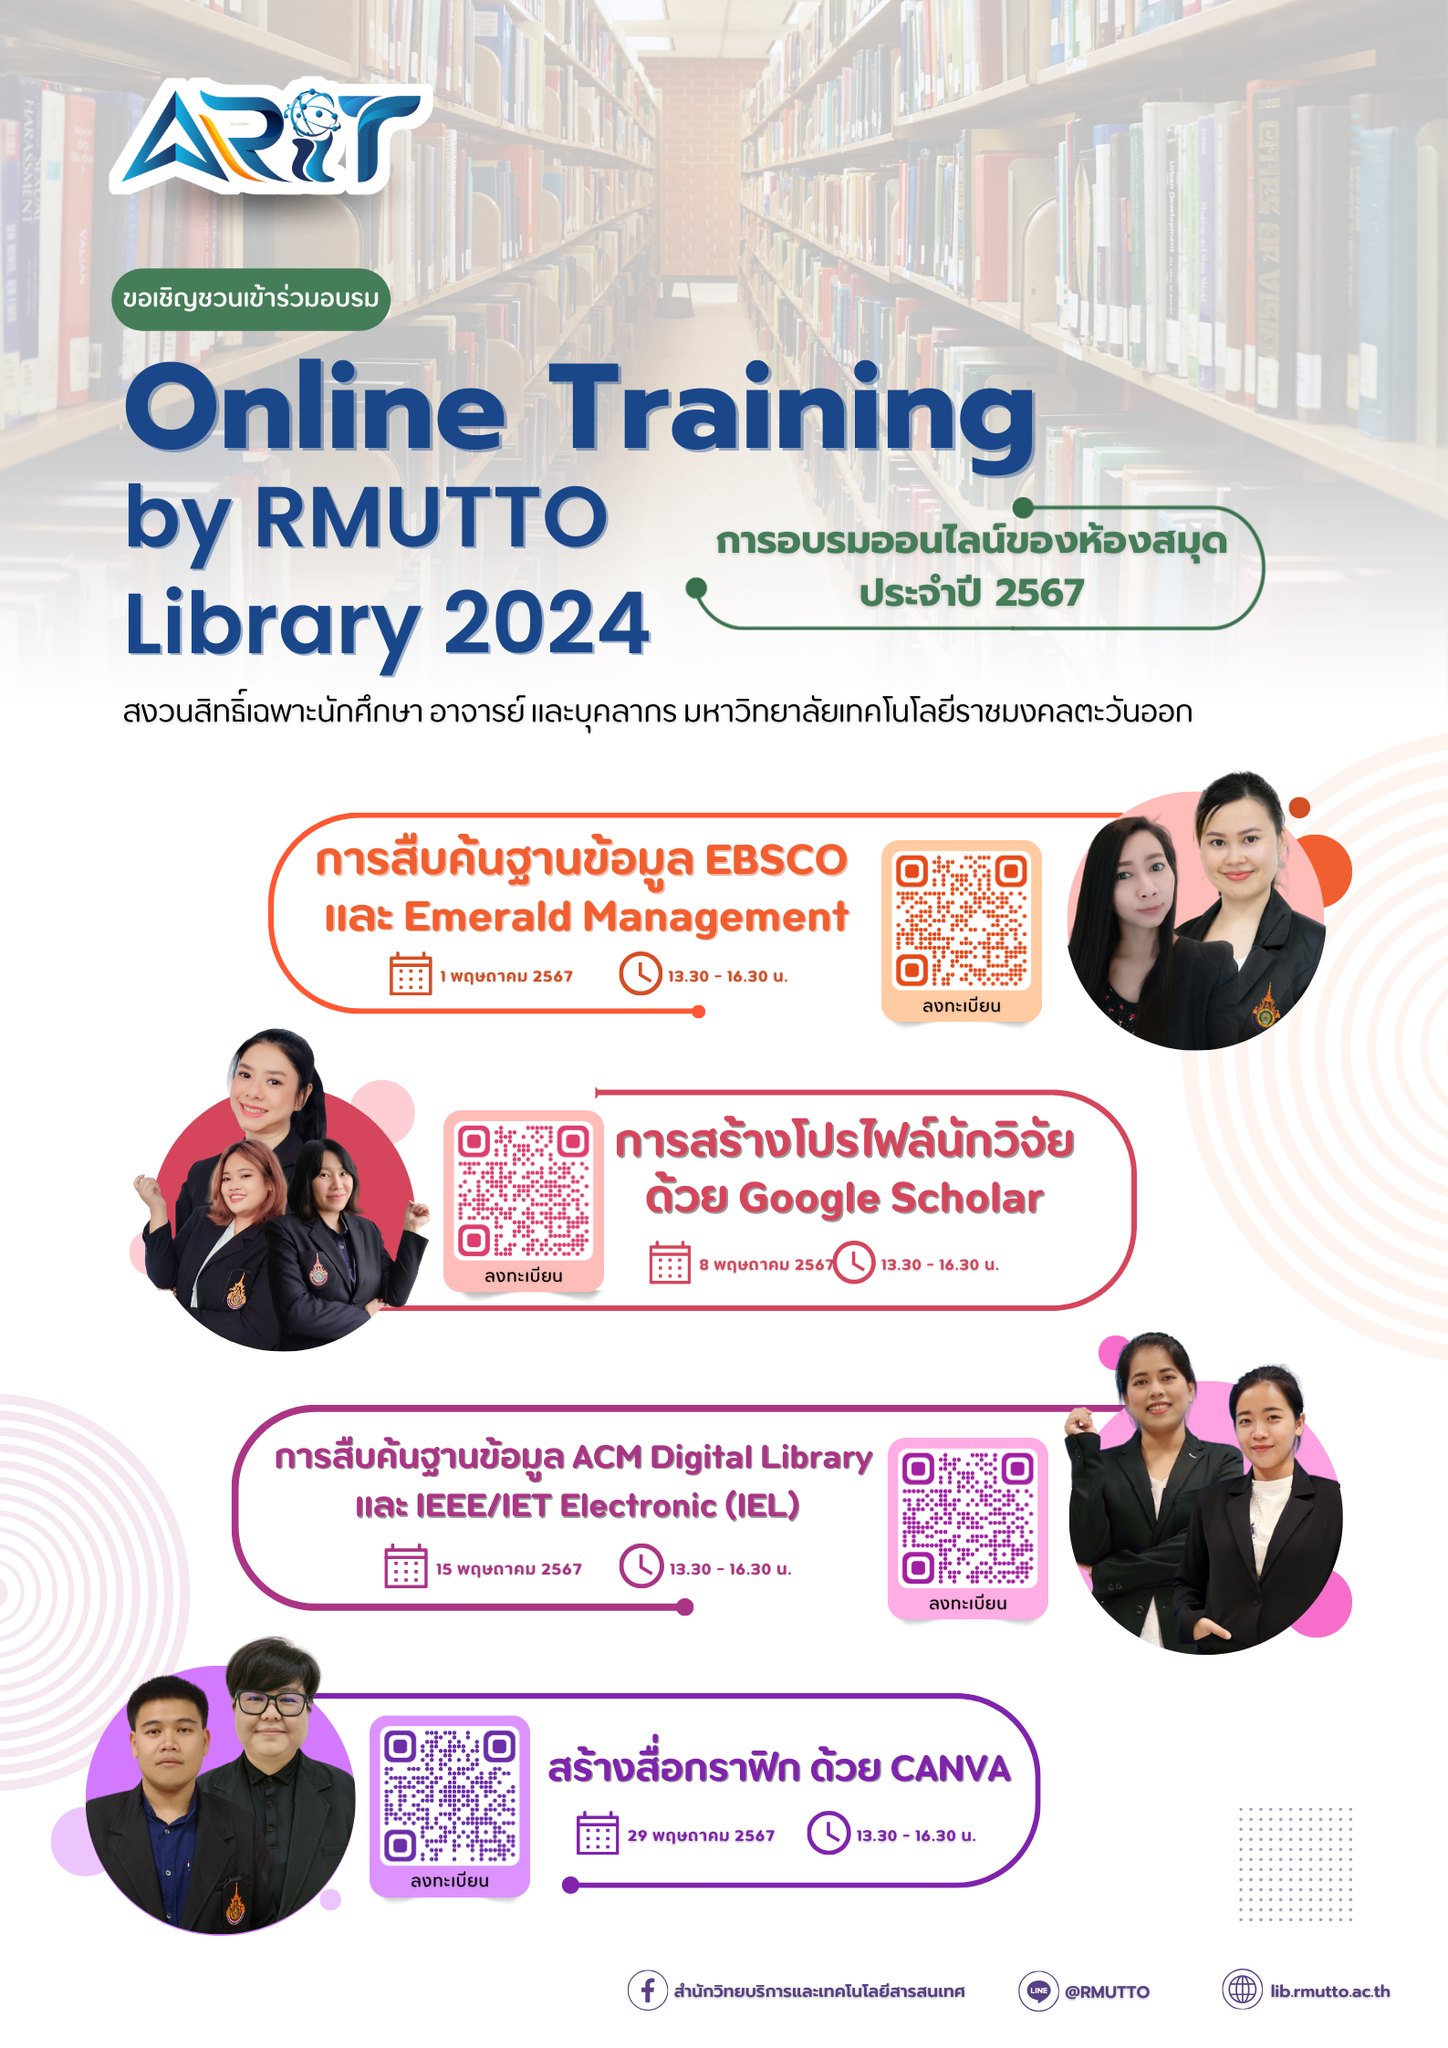 ขอเชิญชวนเข้าร่วมการอบรม Online Training by RMUTTO Library 2024 (อบรมออนไลน์ของห้องสมุดประจำปี 2567)